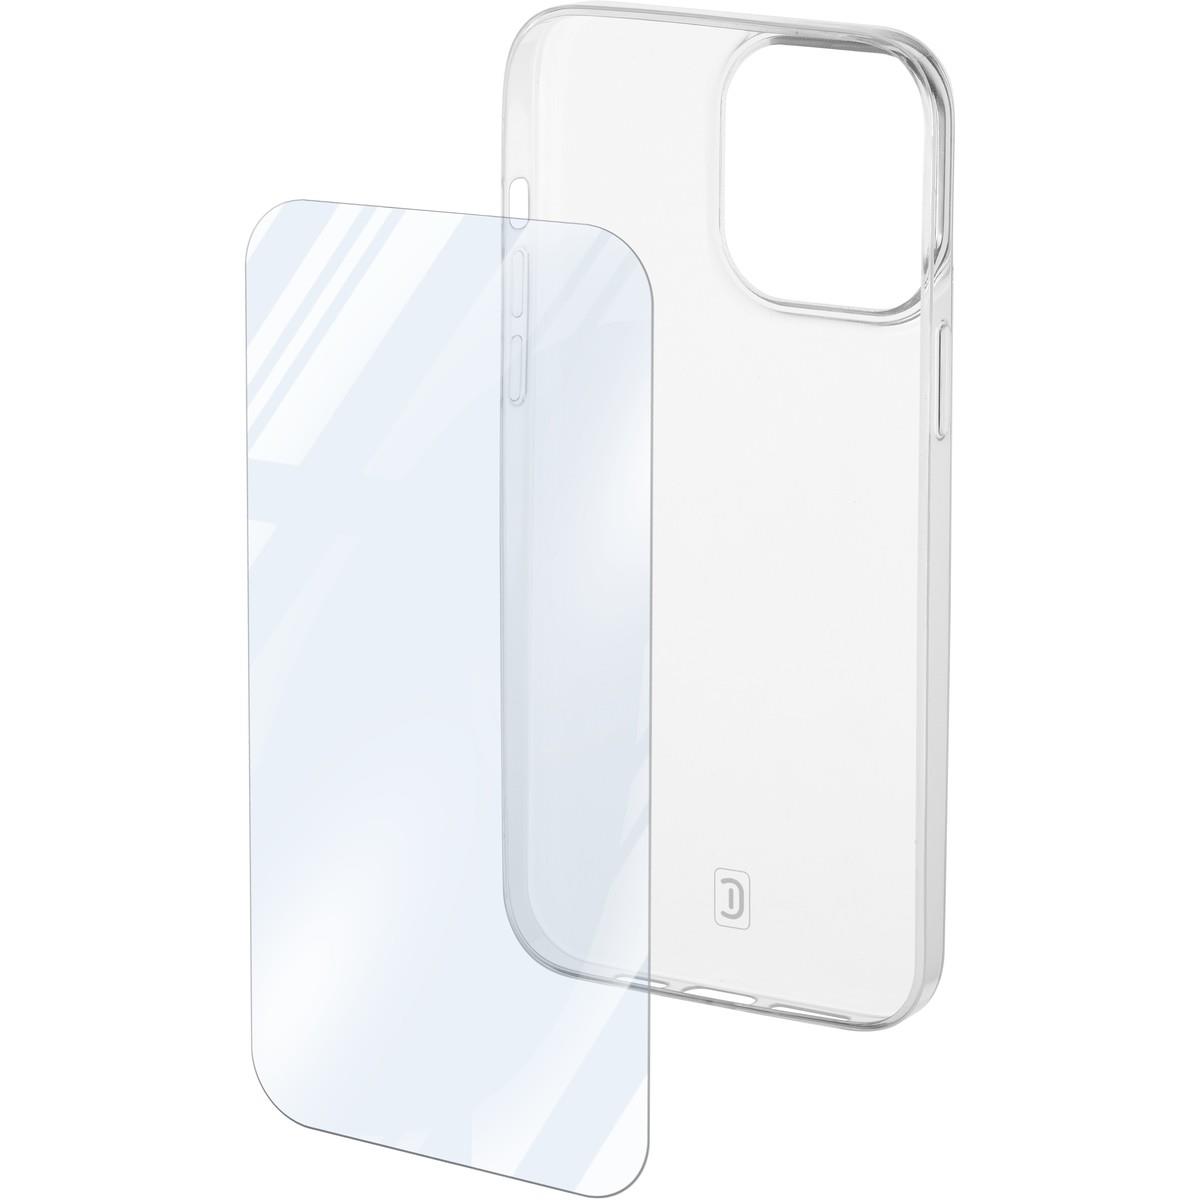 Set PROTECTION KIT aus Backcover und Schutzglas für Apple iPhone 15